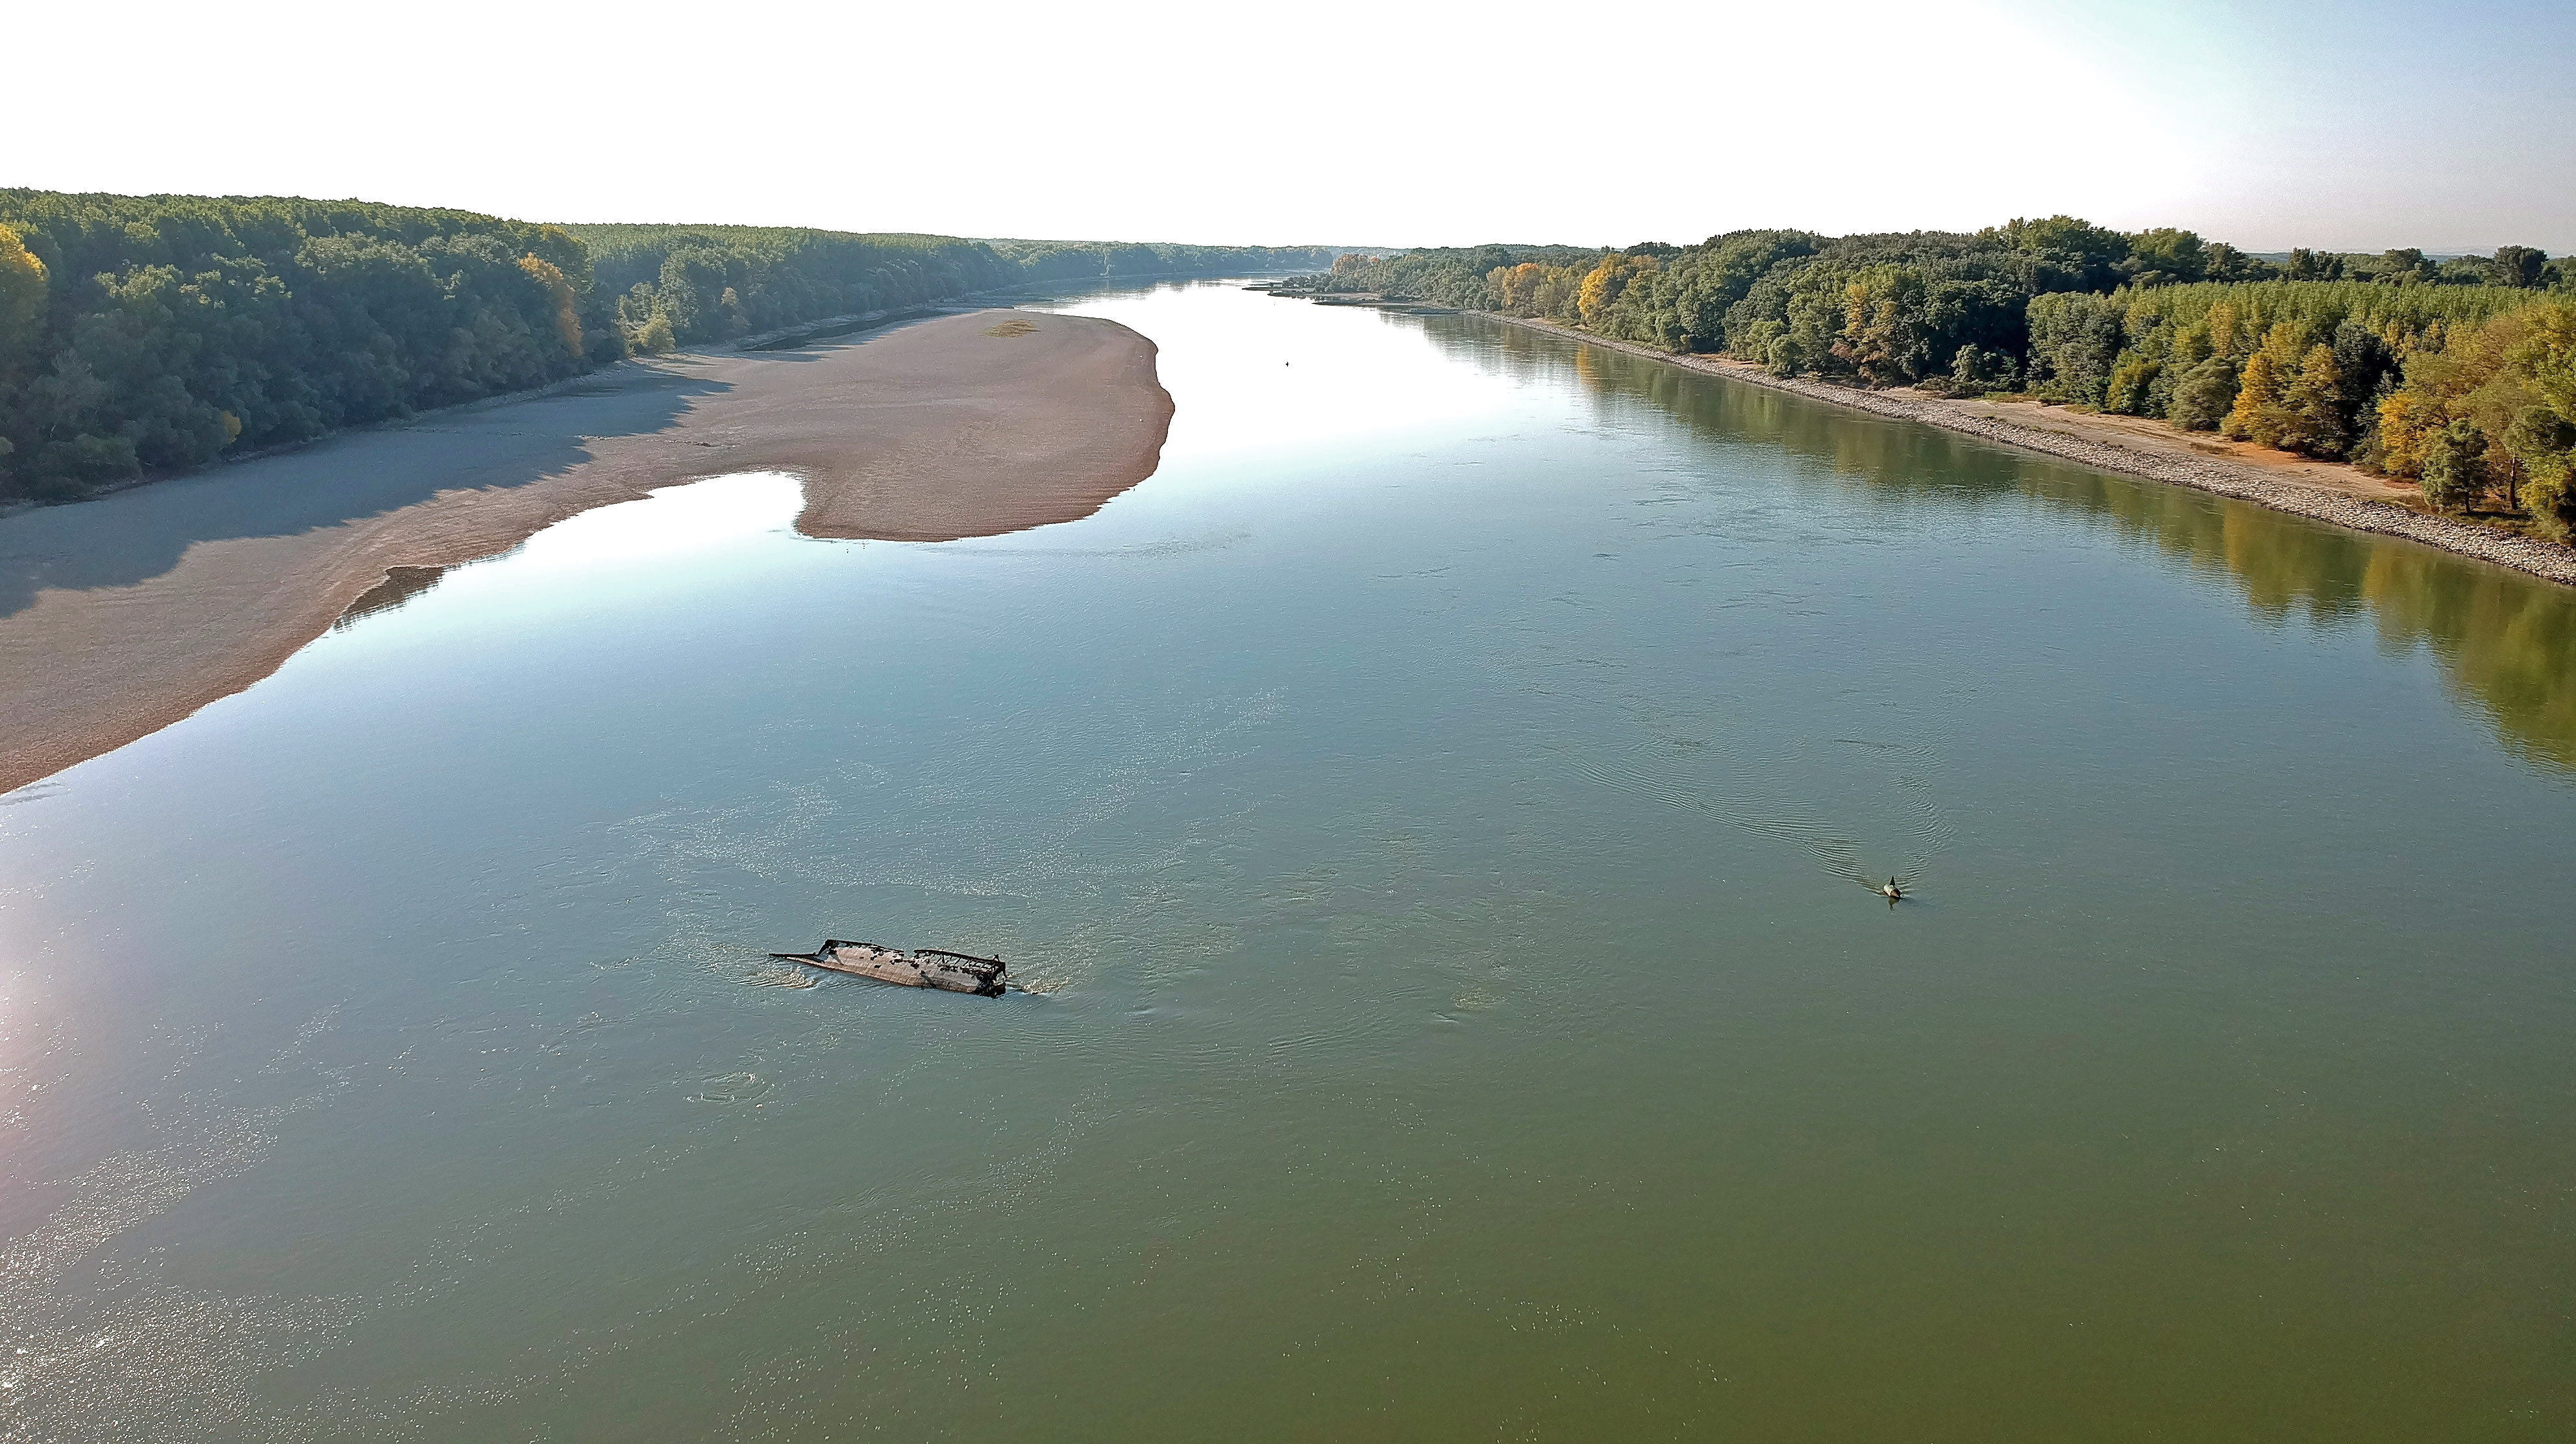 <p>Останките на кораб, потънал по време на Втората световна война, се разкриват от необичайно ниското ниво на водата на река Дунав близо до Vamosszabadi, северозападна Унгария</p>